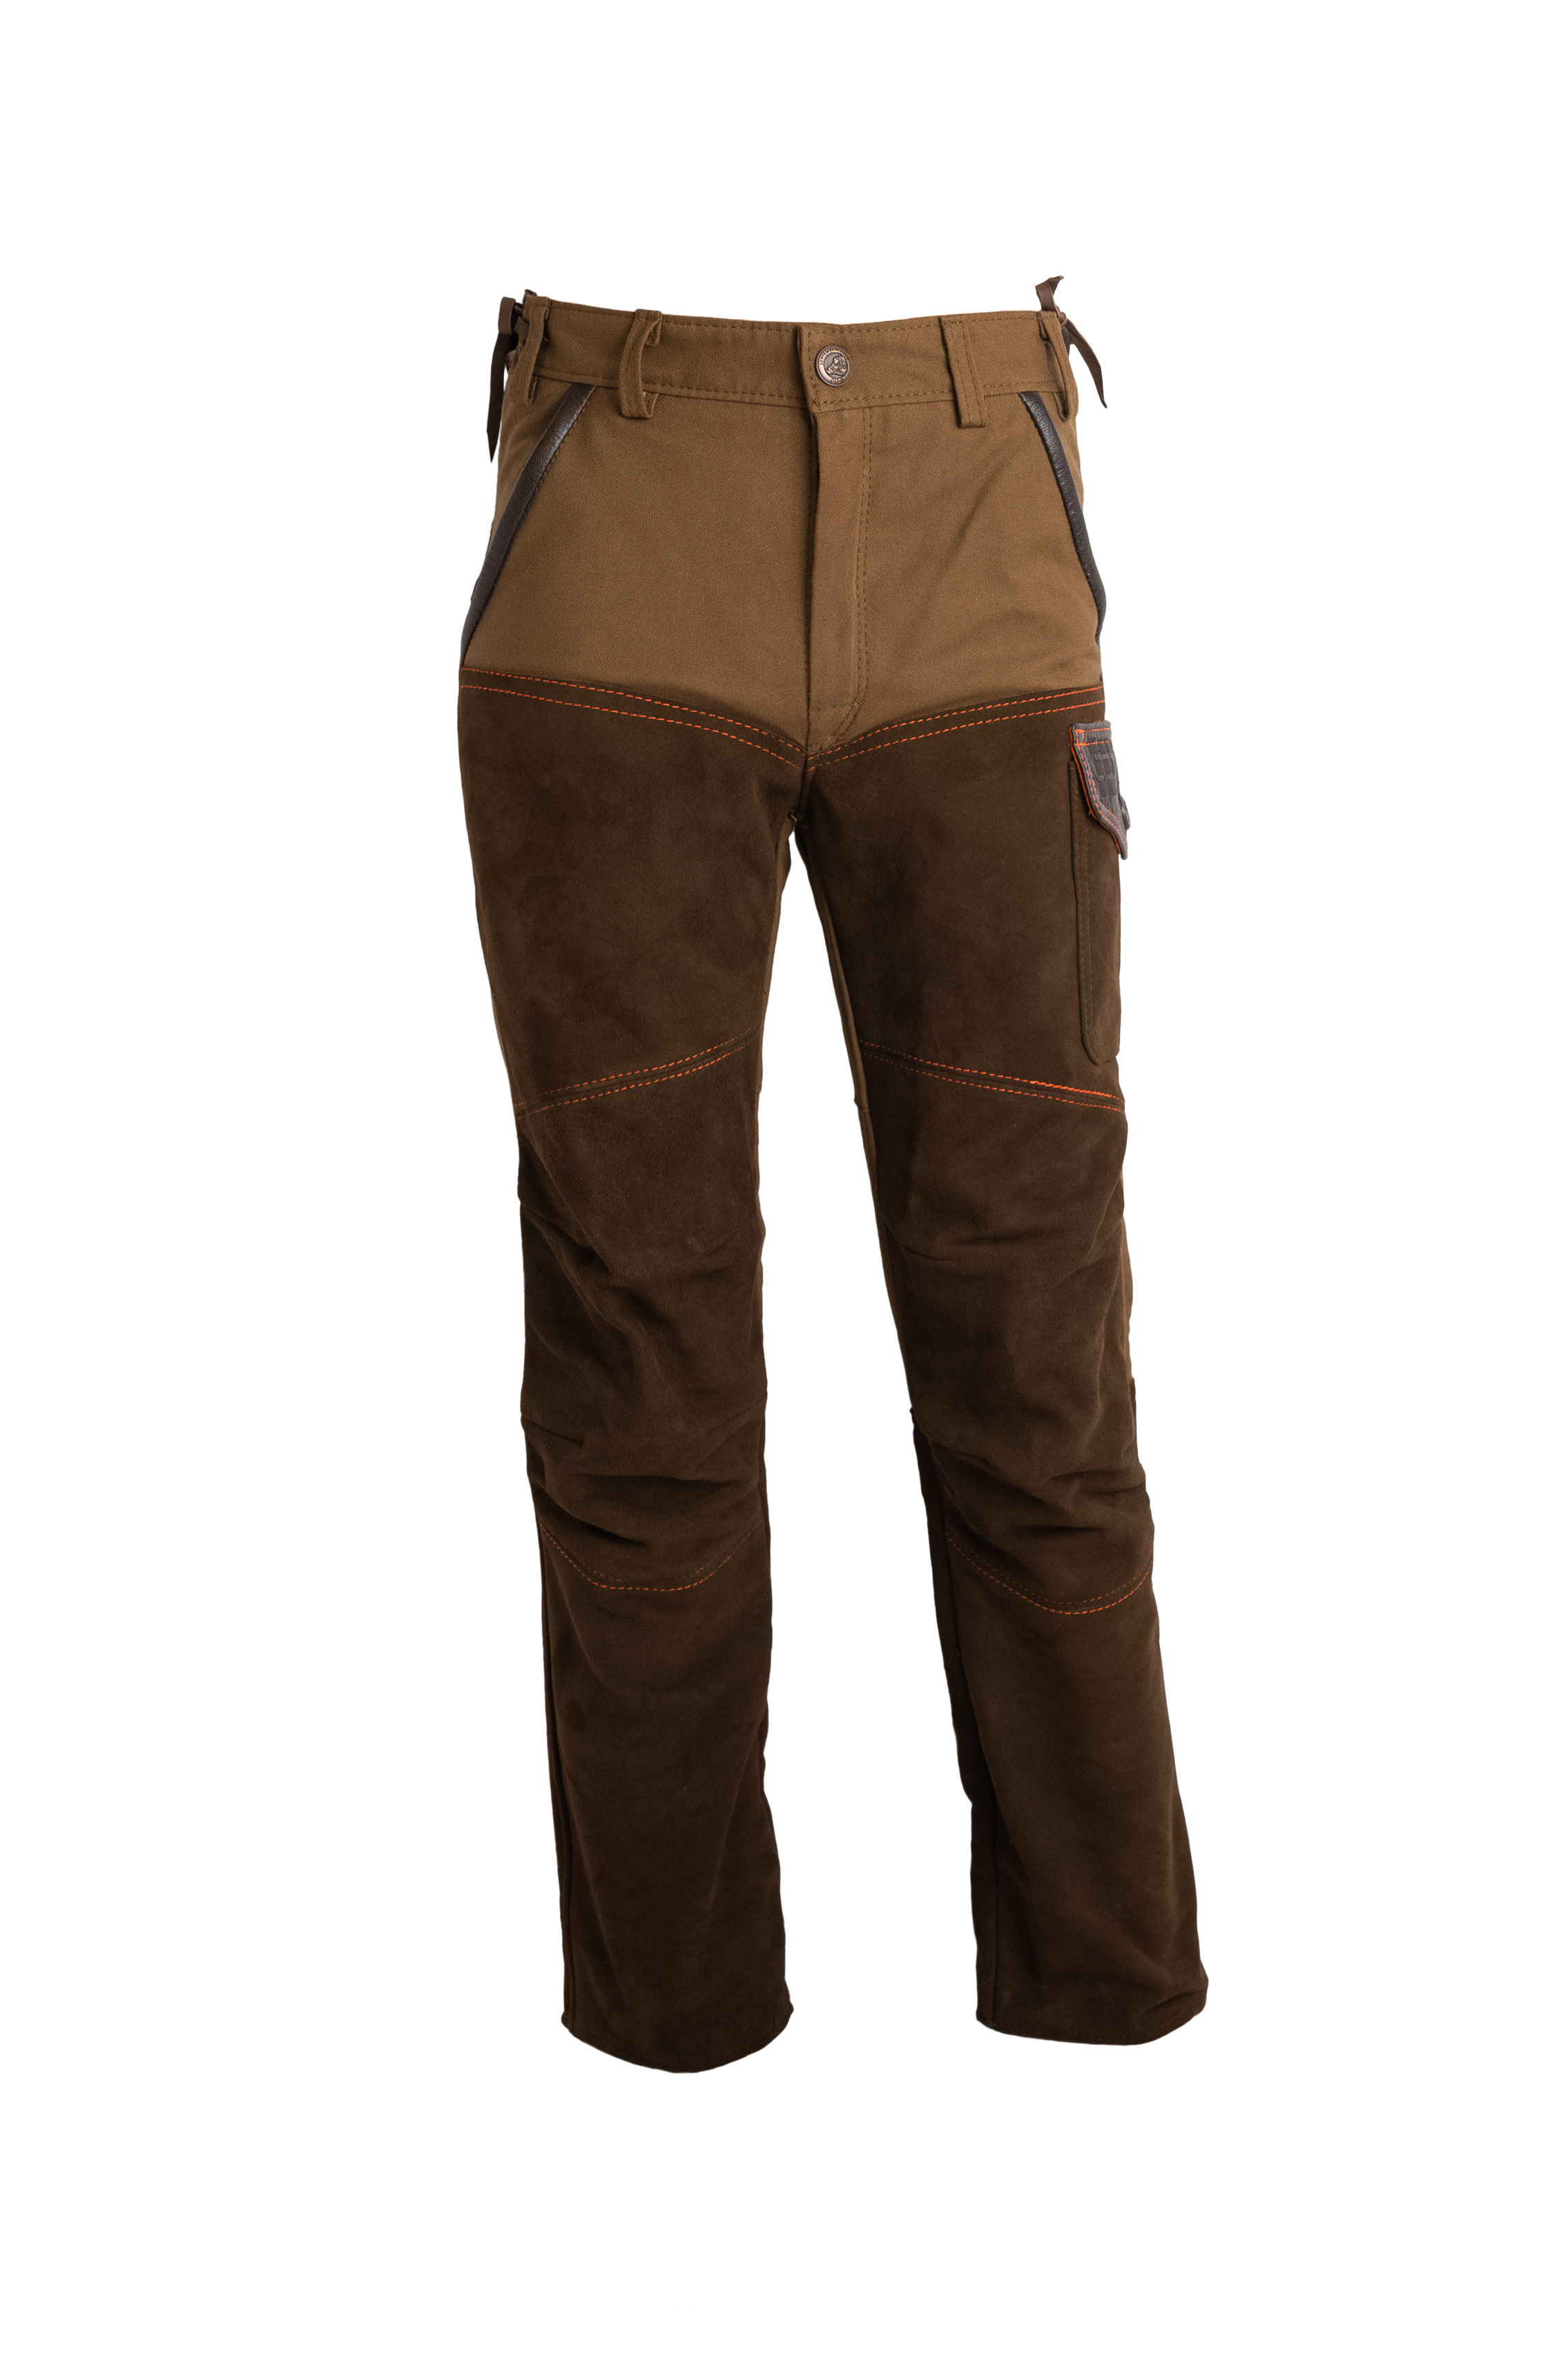 Vêtement de chasse homme : blouson, pantalon, salopette